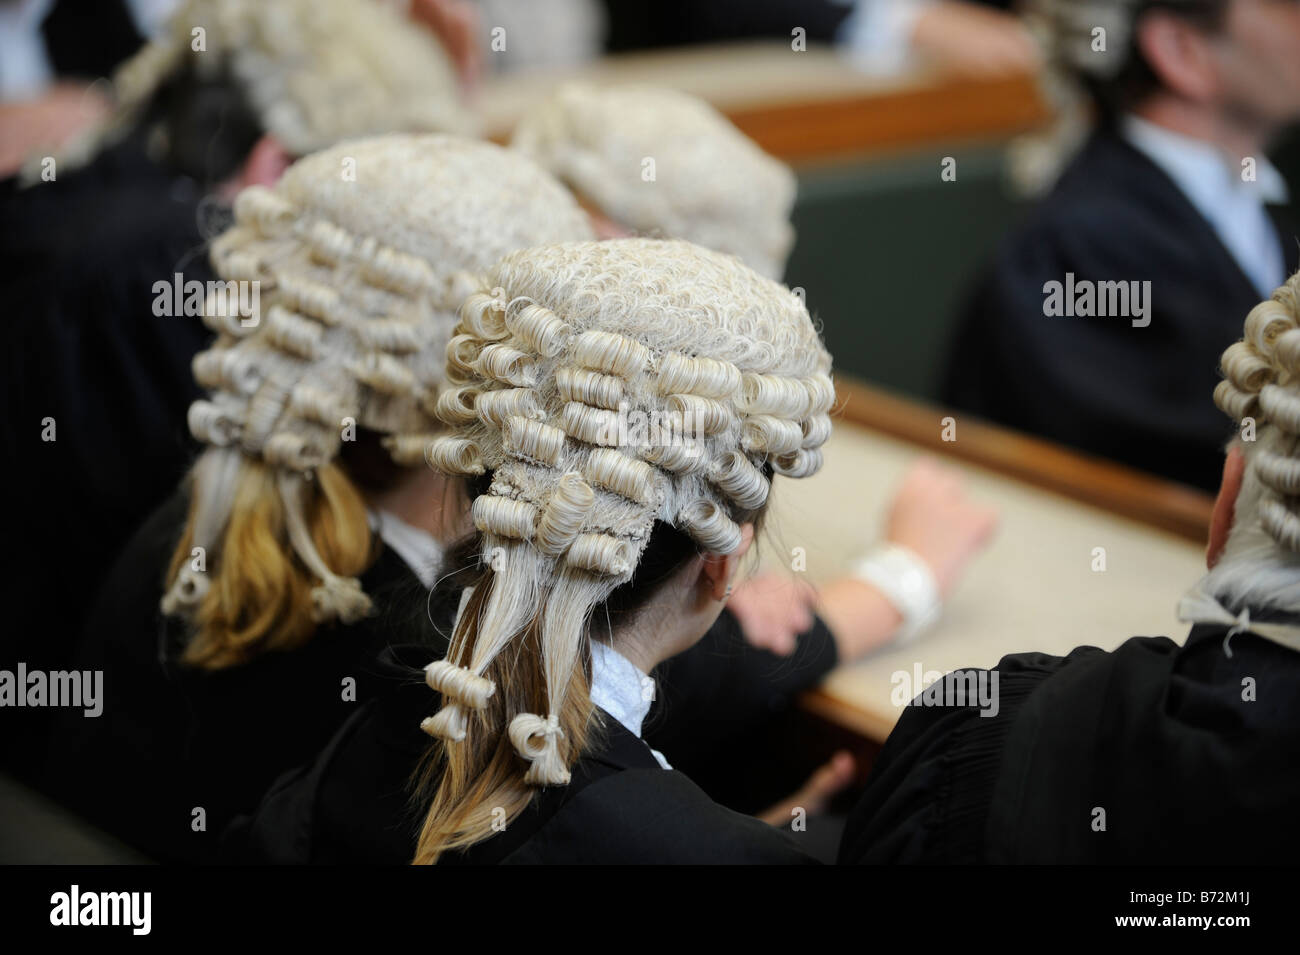 Generisches Gericht Bild: Mitglieder der Bar tragen Friseure Perücken. VEREINIGTES KÖNIGREICH. Stockfoto